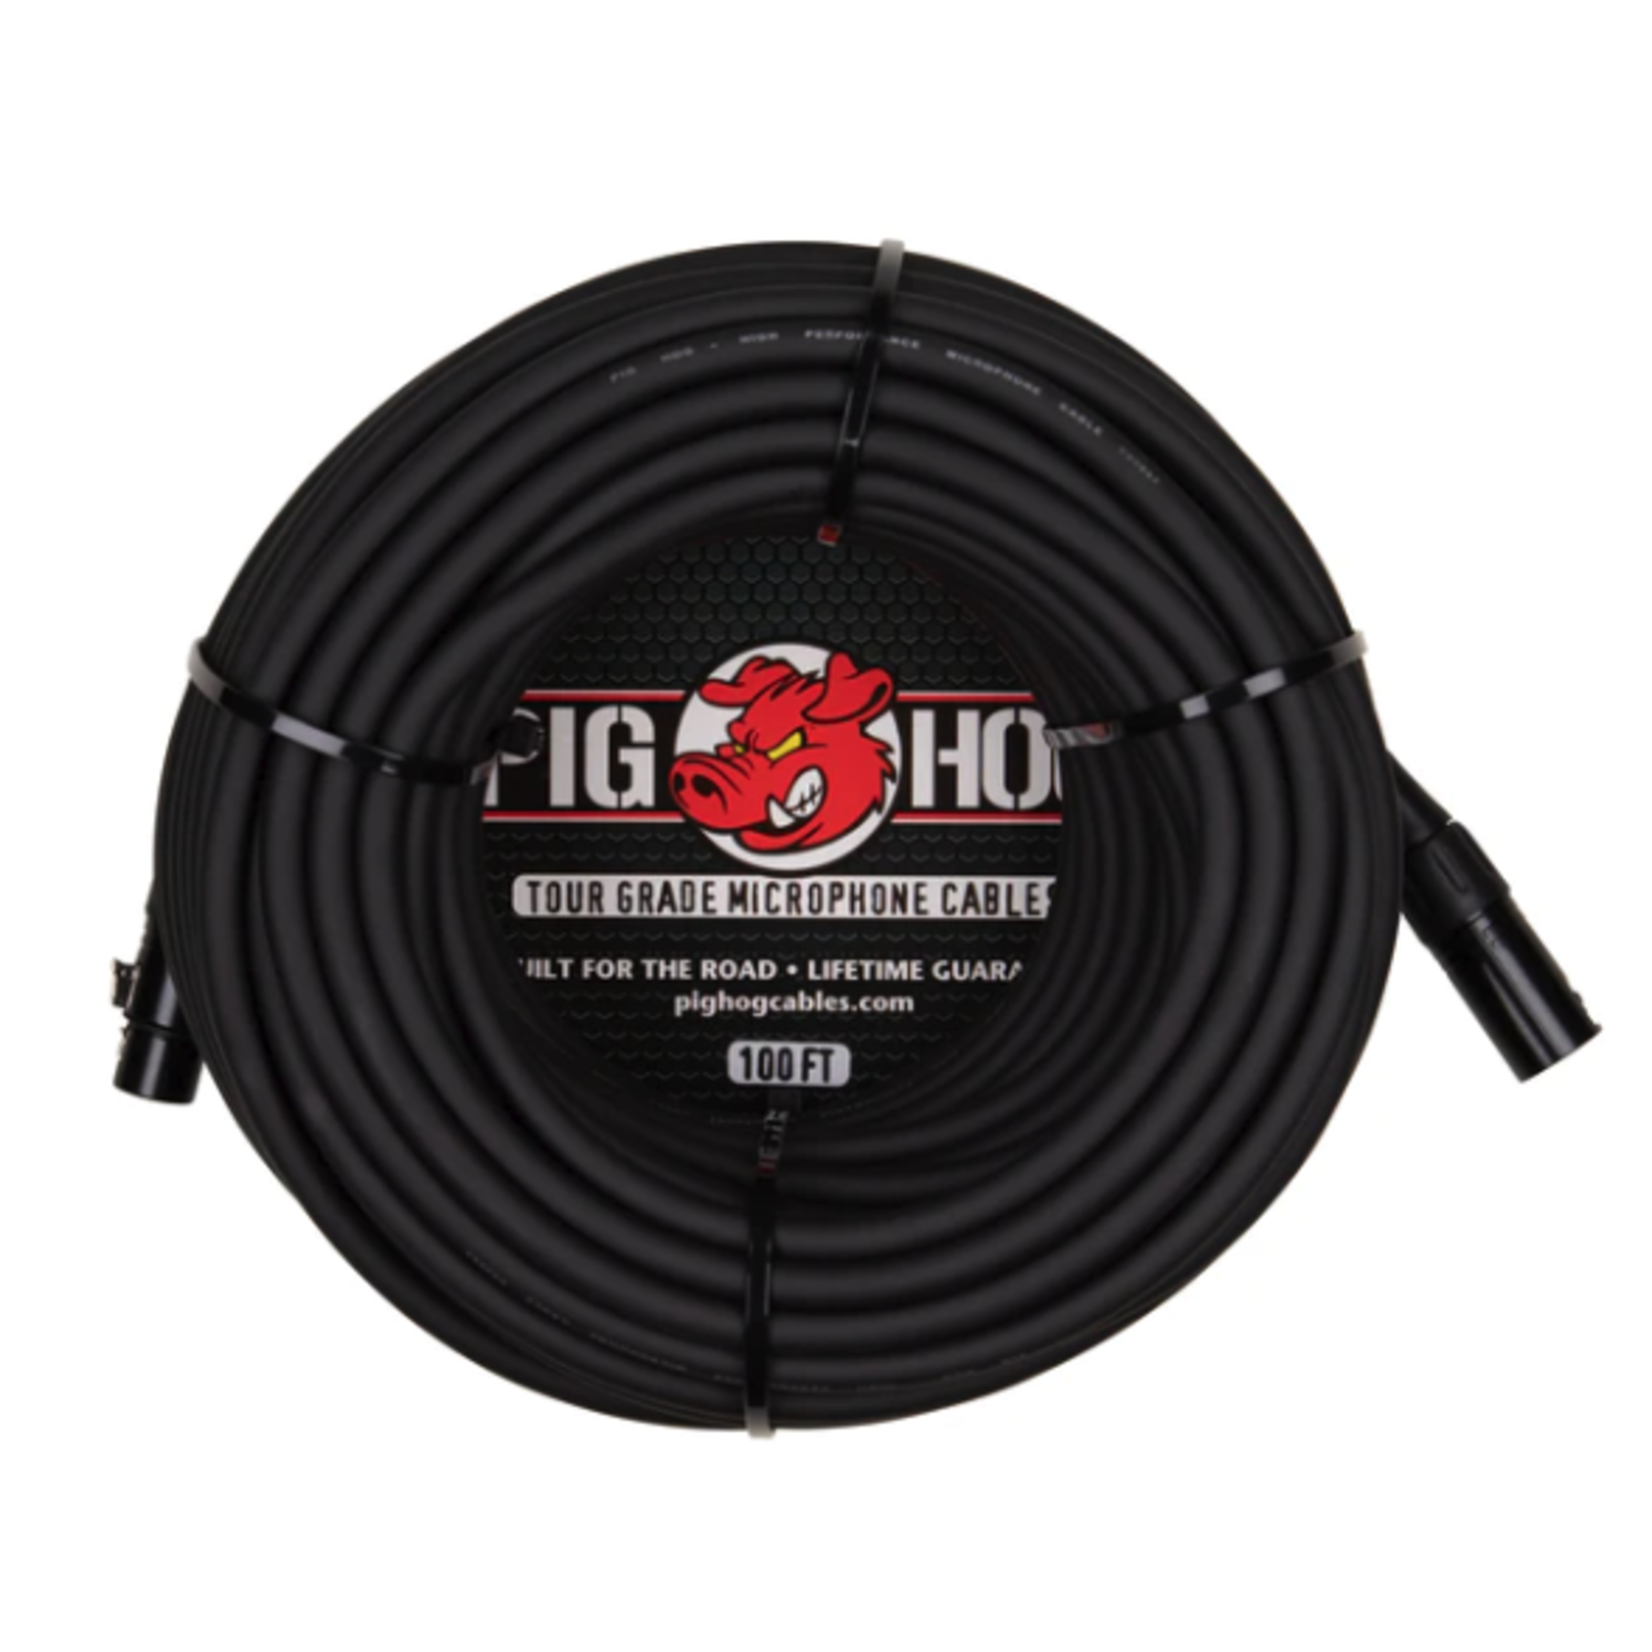 Pig Hog 100' XLR Mic Cable